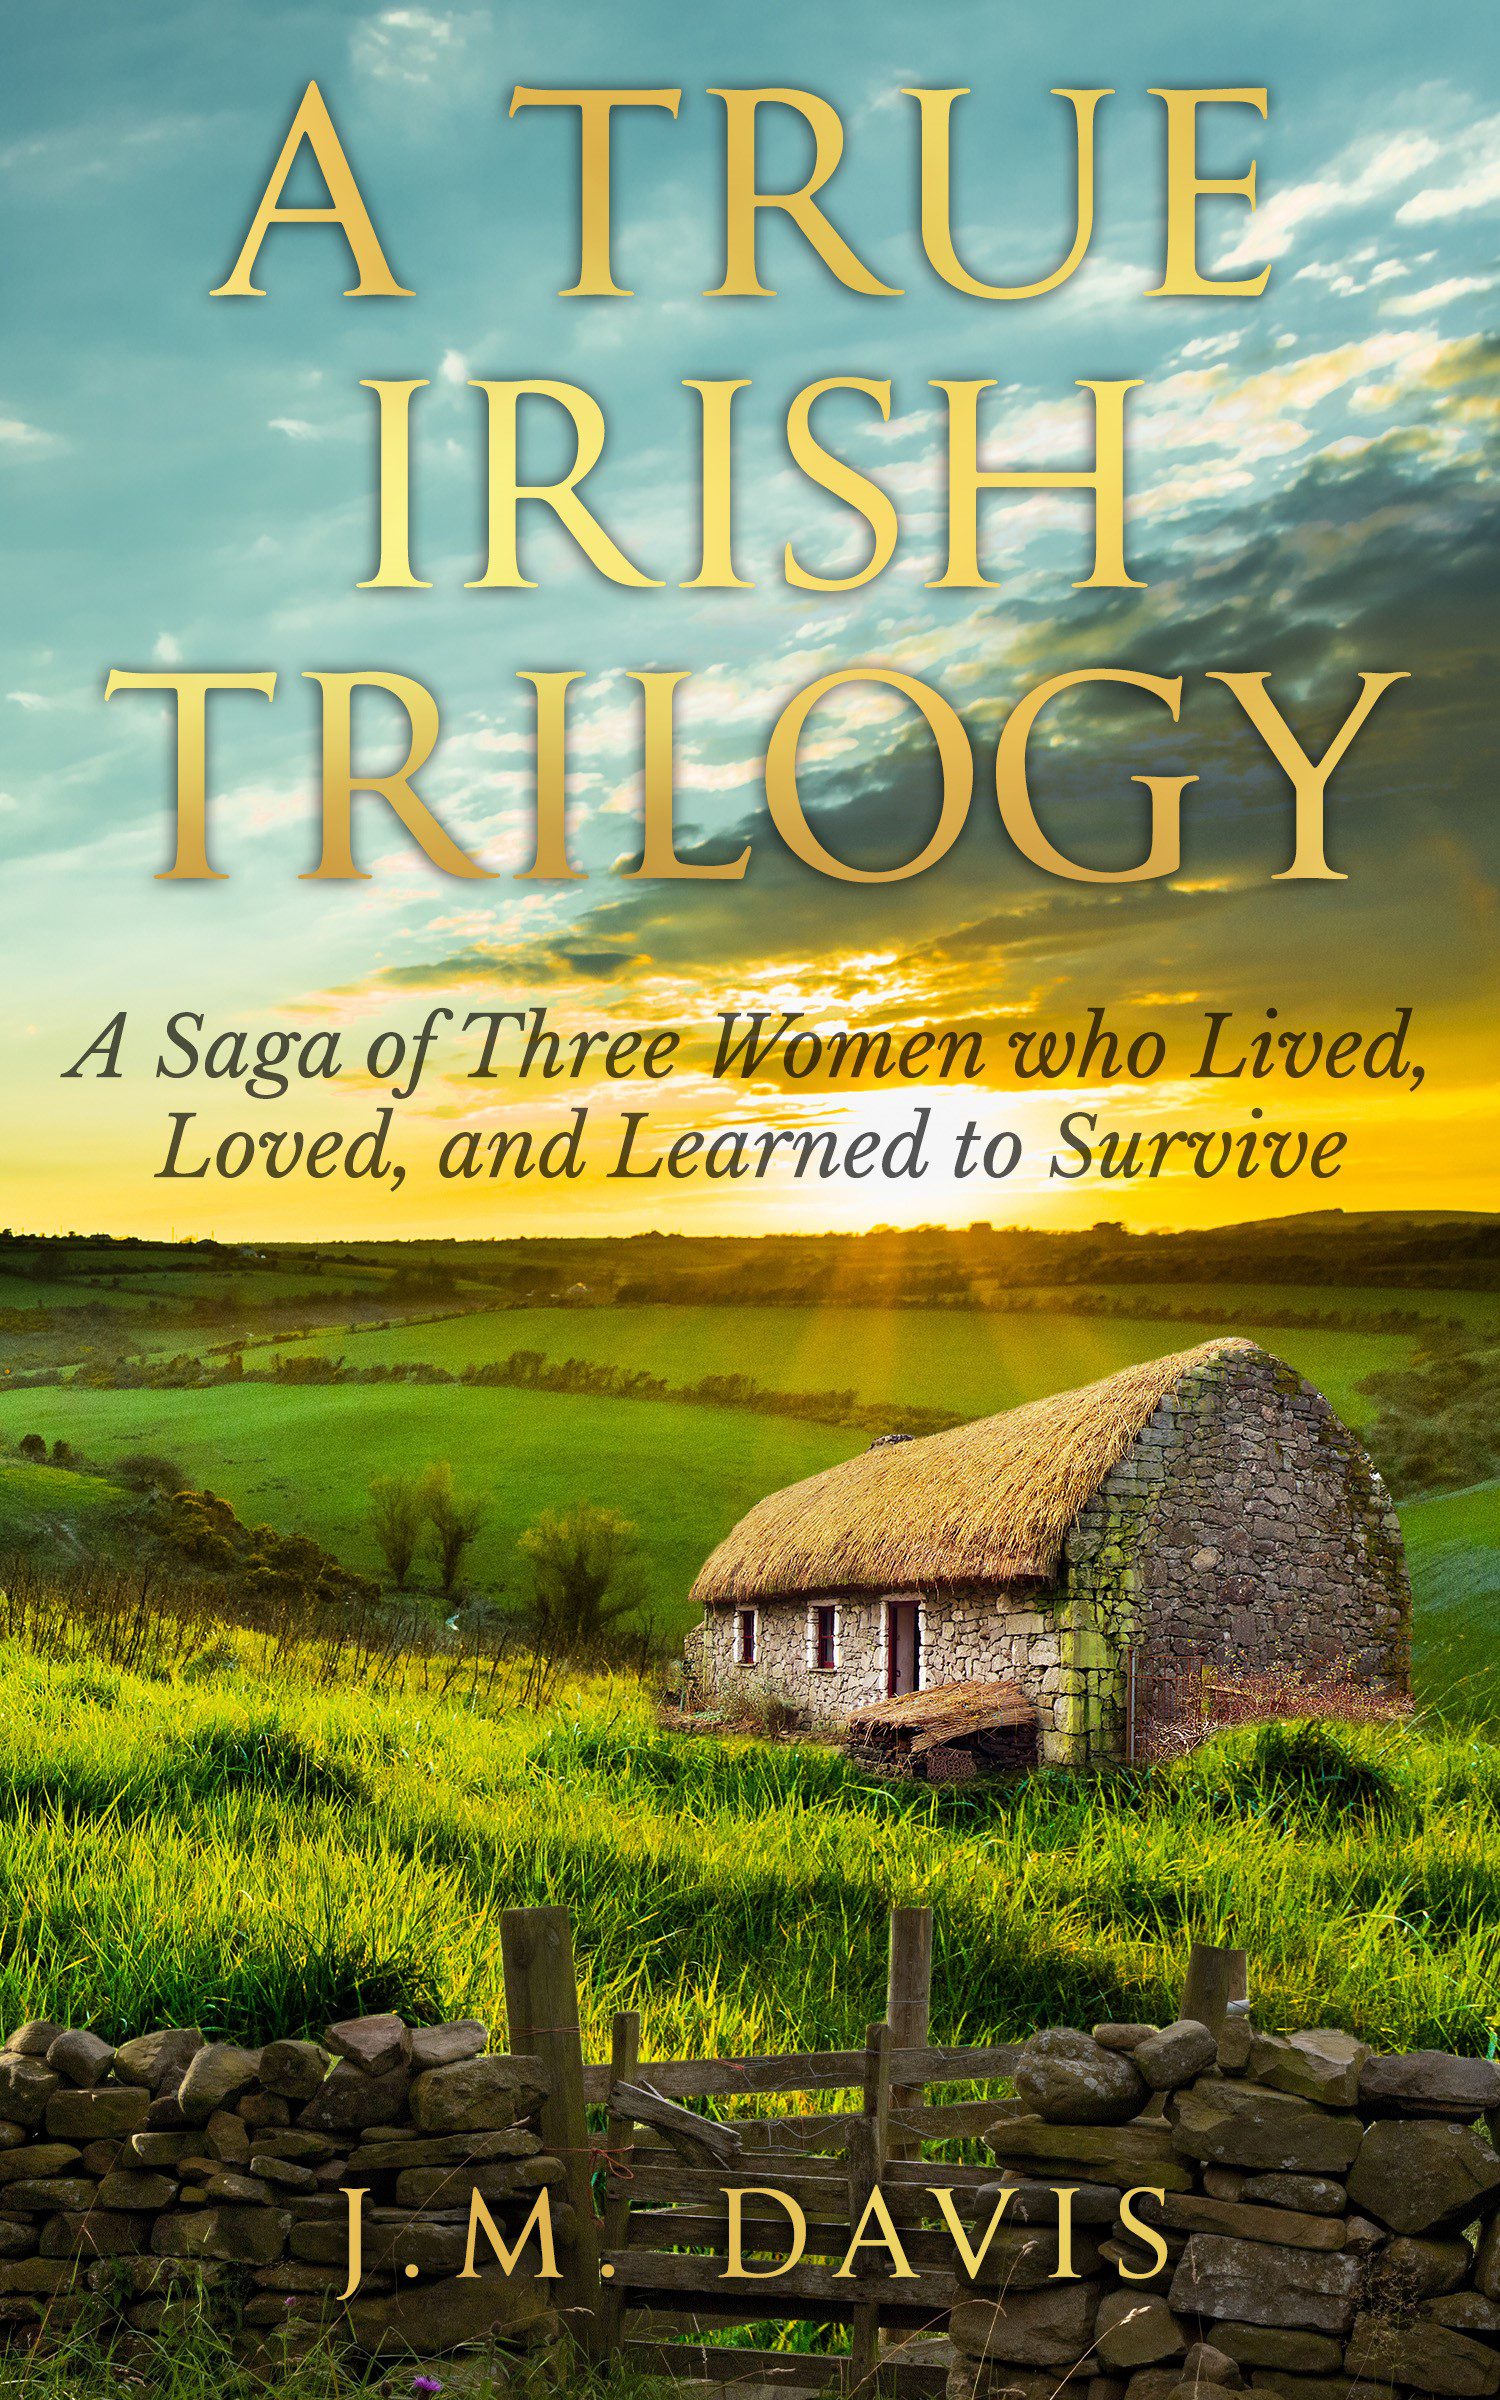 A True Irish Trilogy